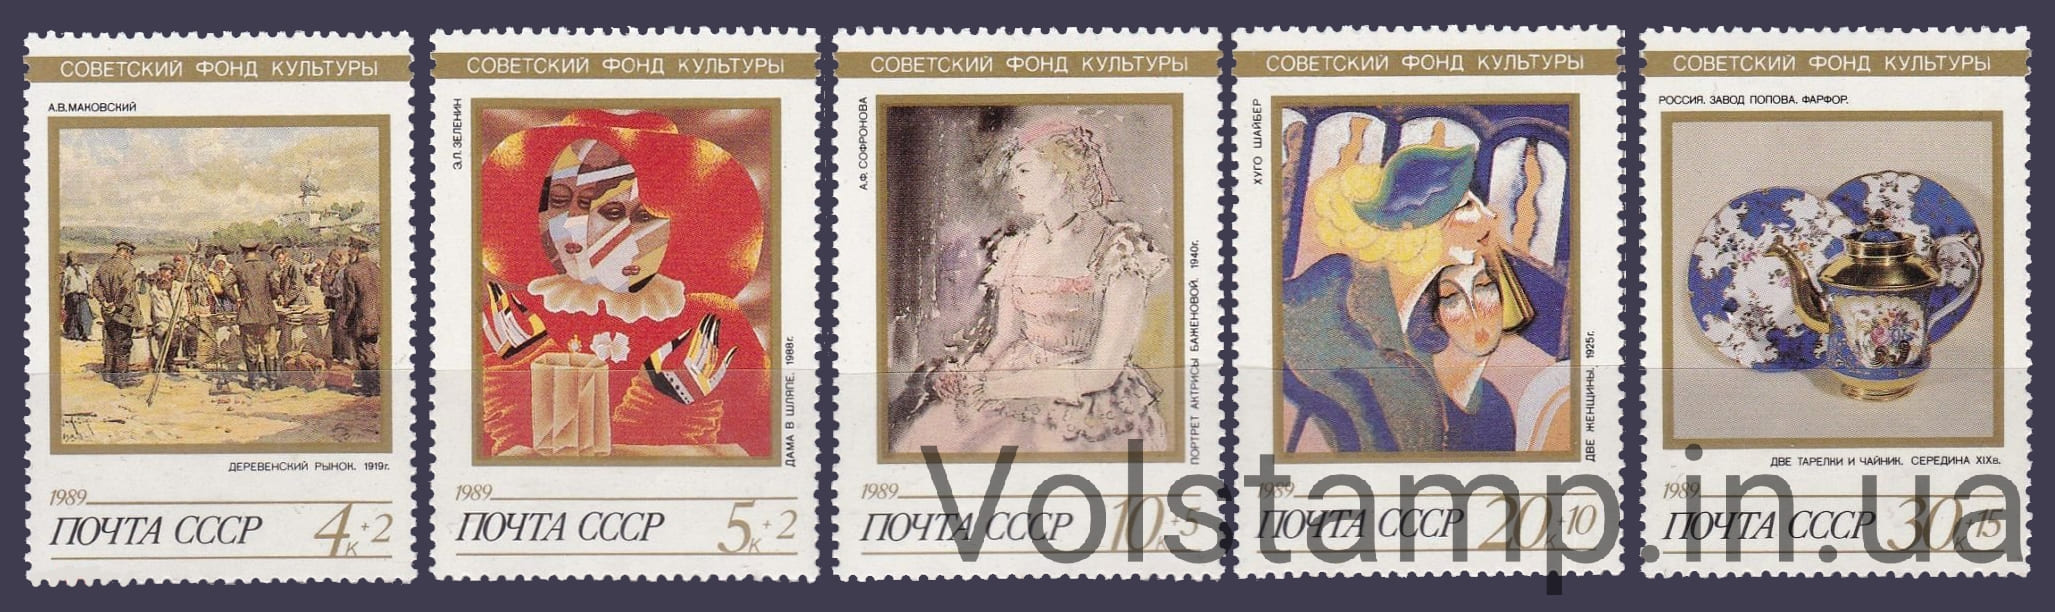 1989 серия марок Искусство №6055-6059